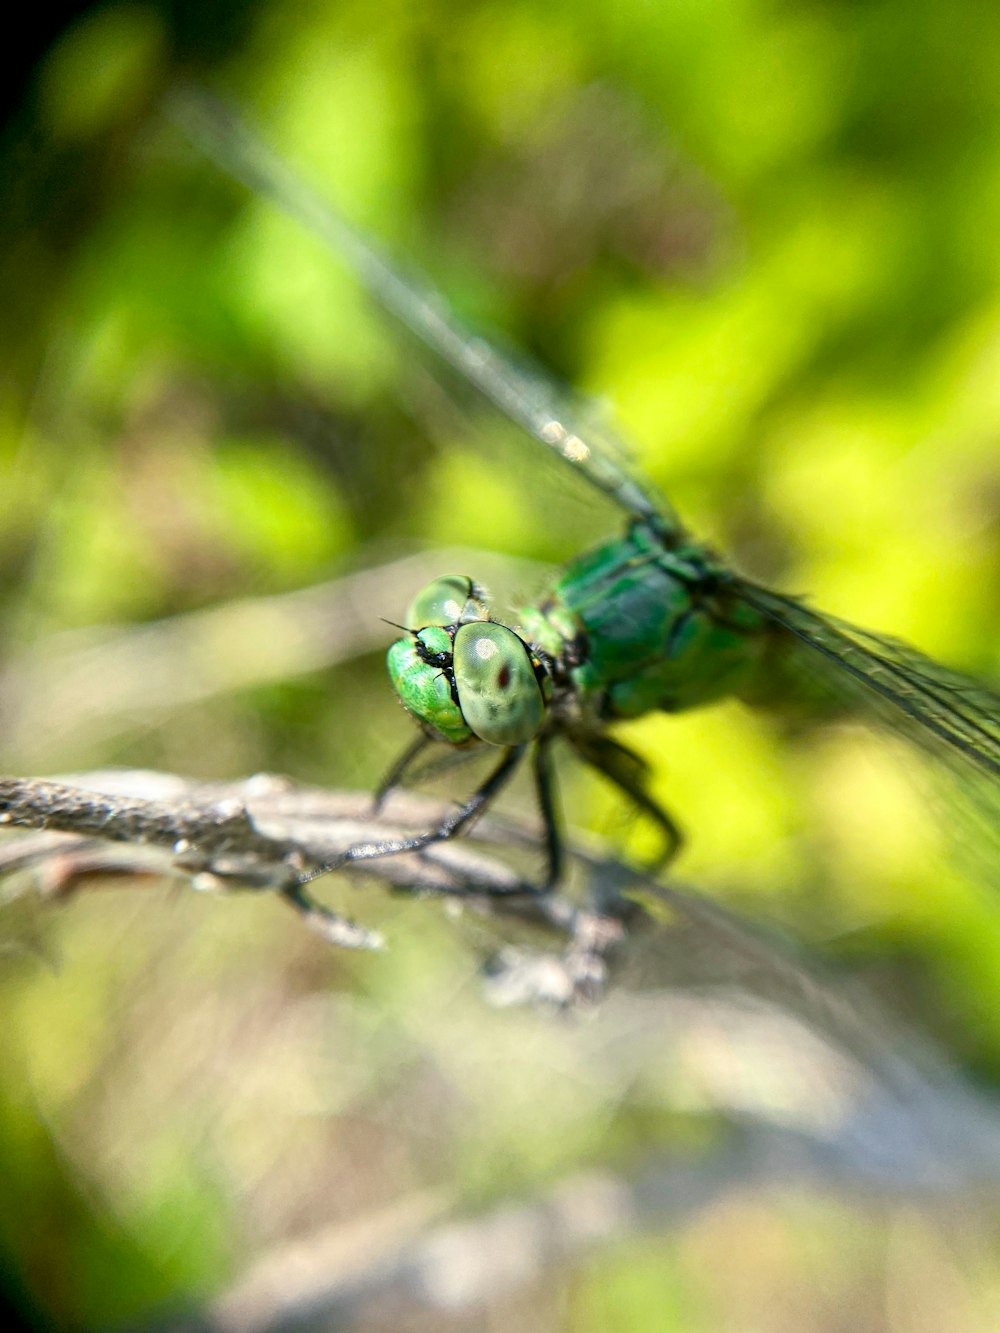 libellule bleue et verte sur branche d’arbre brun dans une lentille à bascule